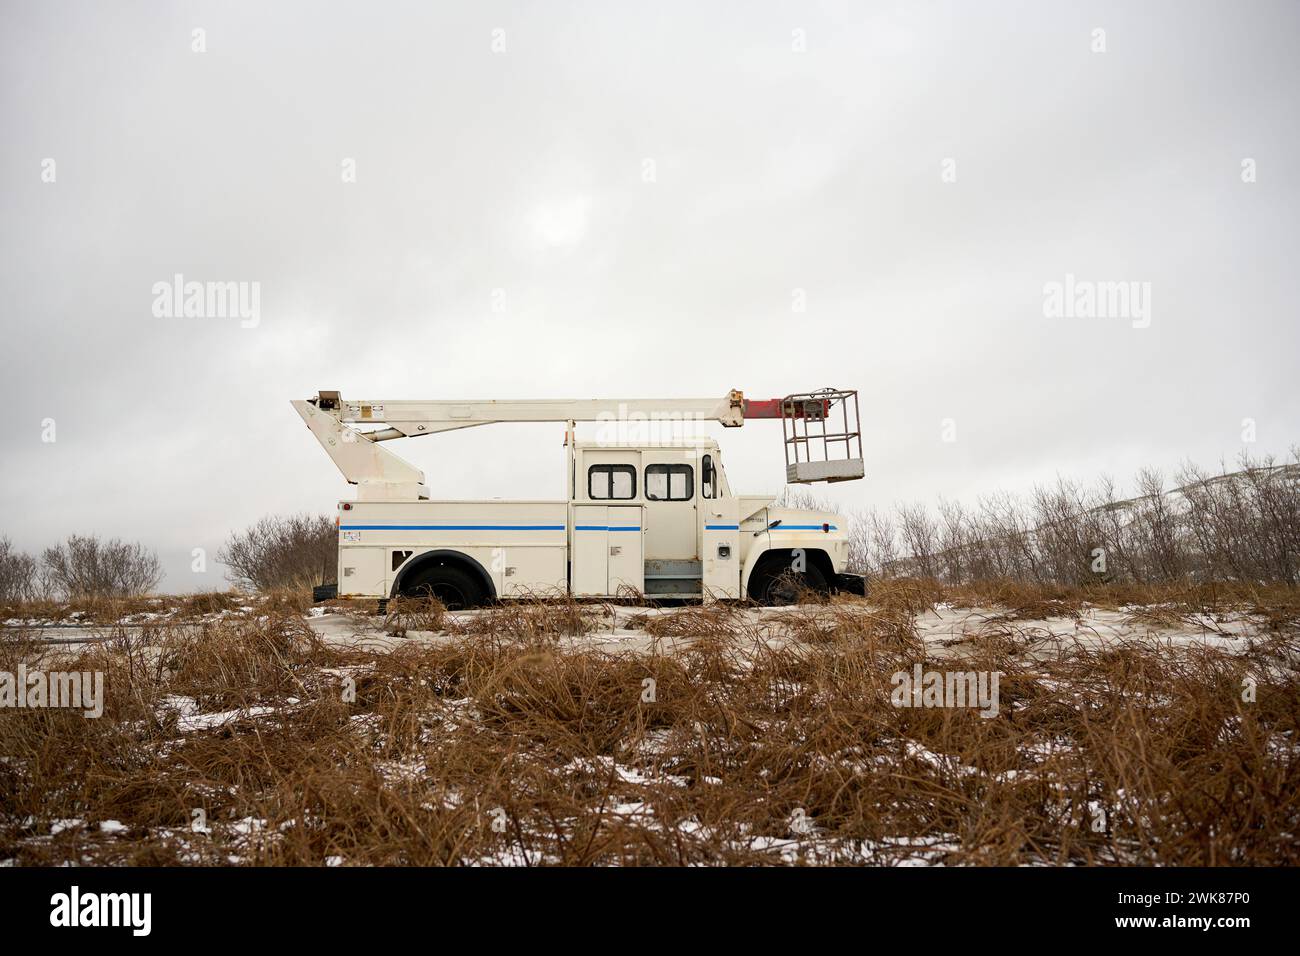 Kranwagen mit Auslegerhubkran auf einem verschneiten, trockenen Grasfeld geparkt Stockfoto